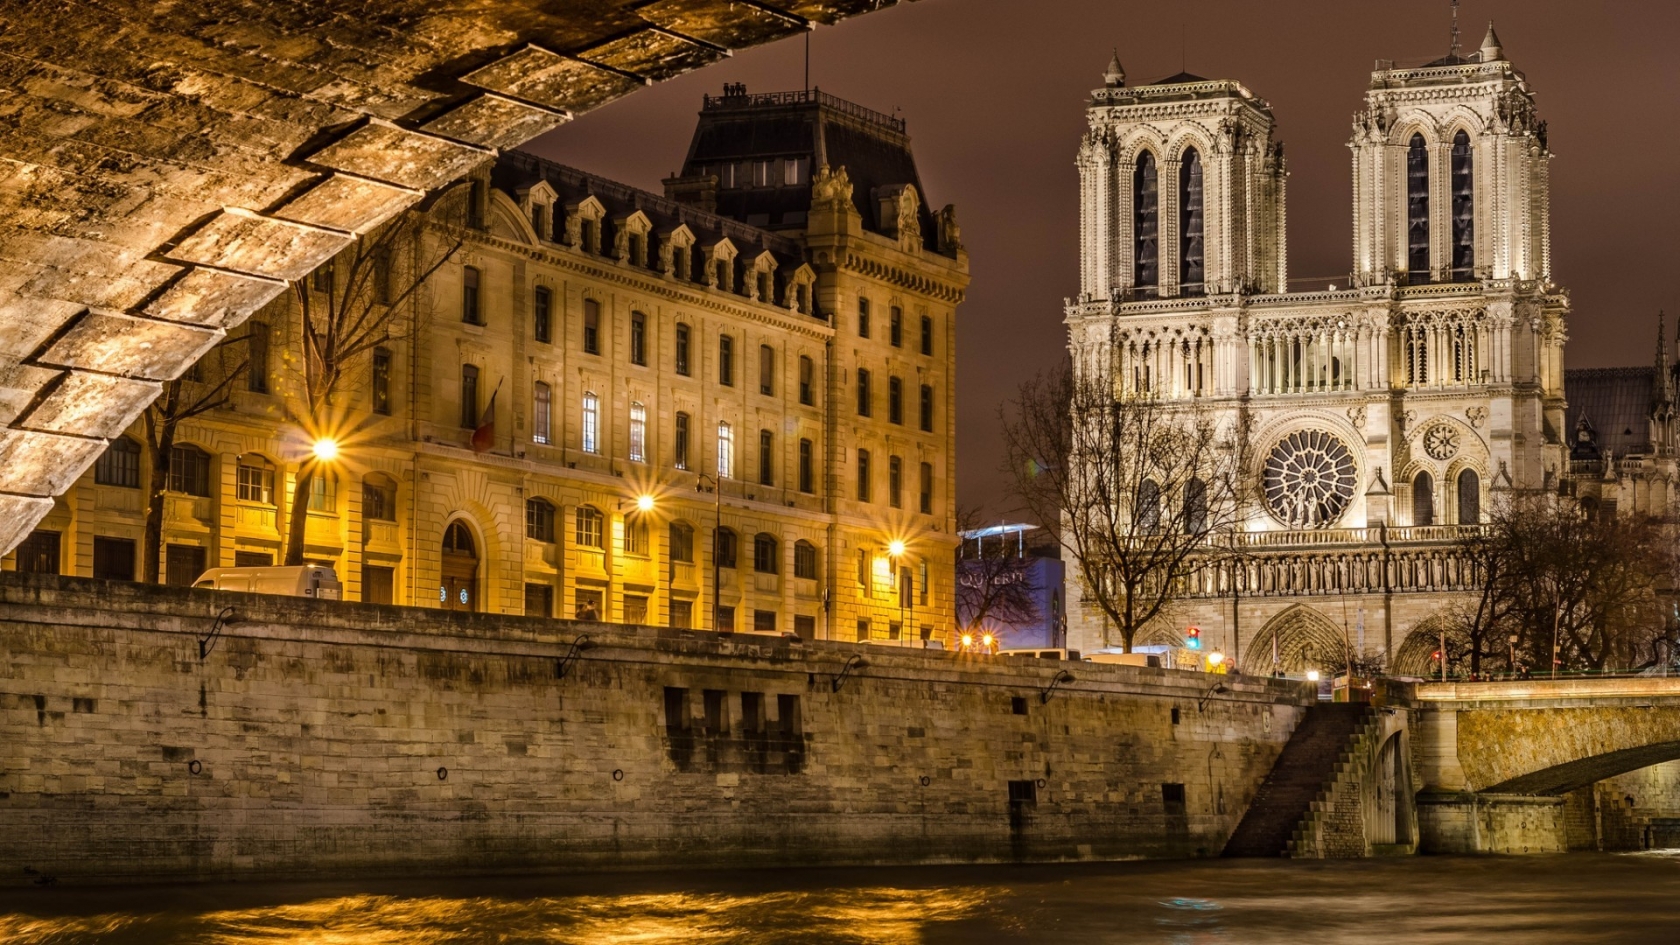 Notre Dame de Paris Front View for 1680 x 945 HDTV resolution